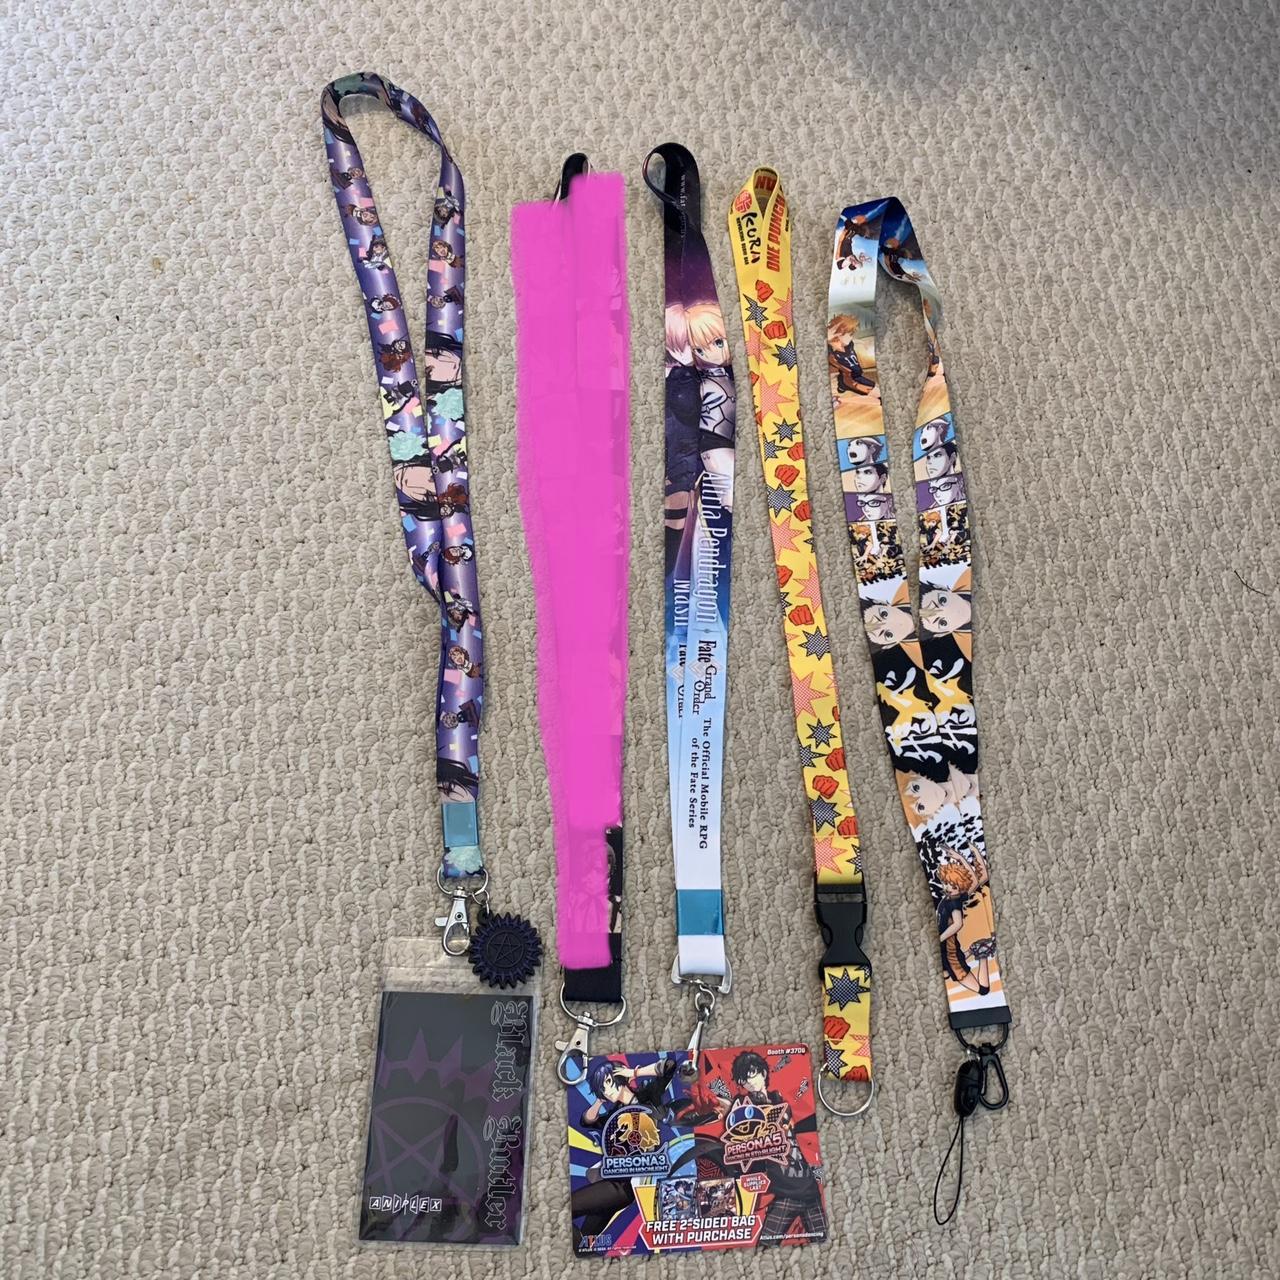 Printed Black Luffy, Zoro, One Piece Key Chain, Anime Keychain